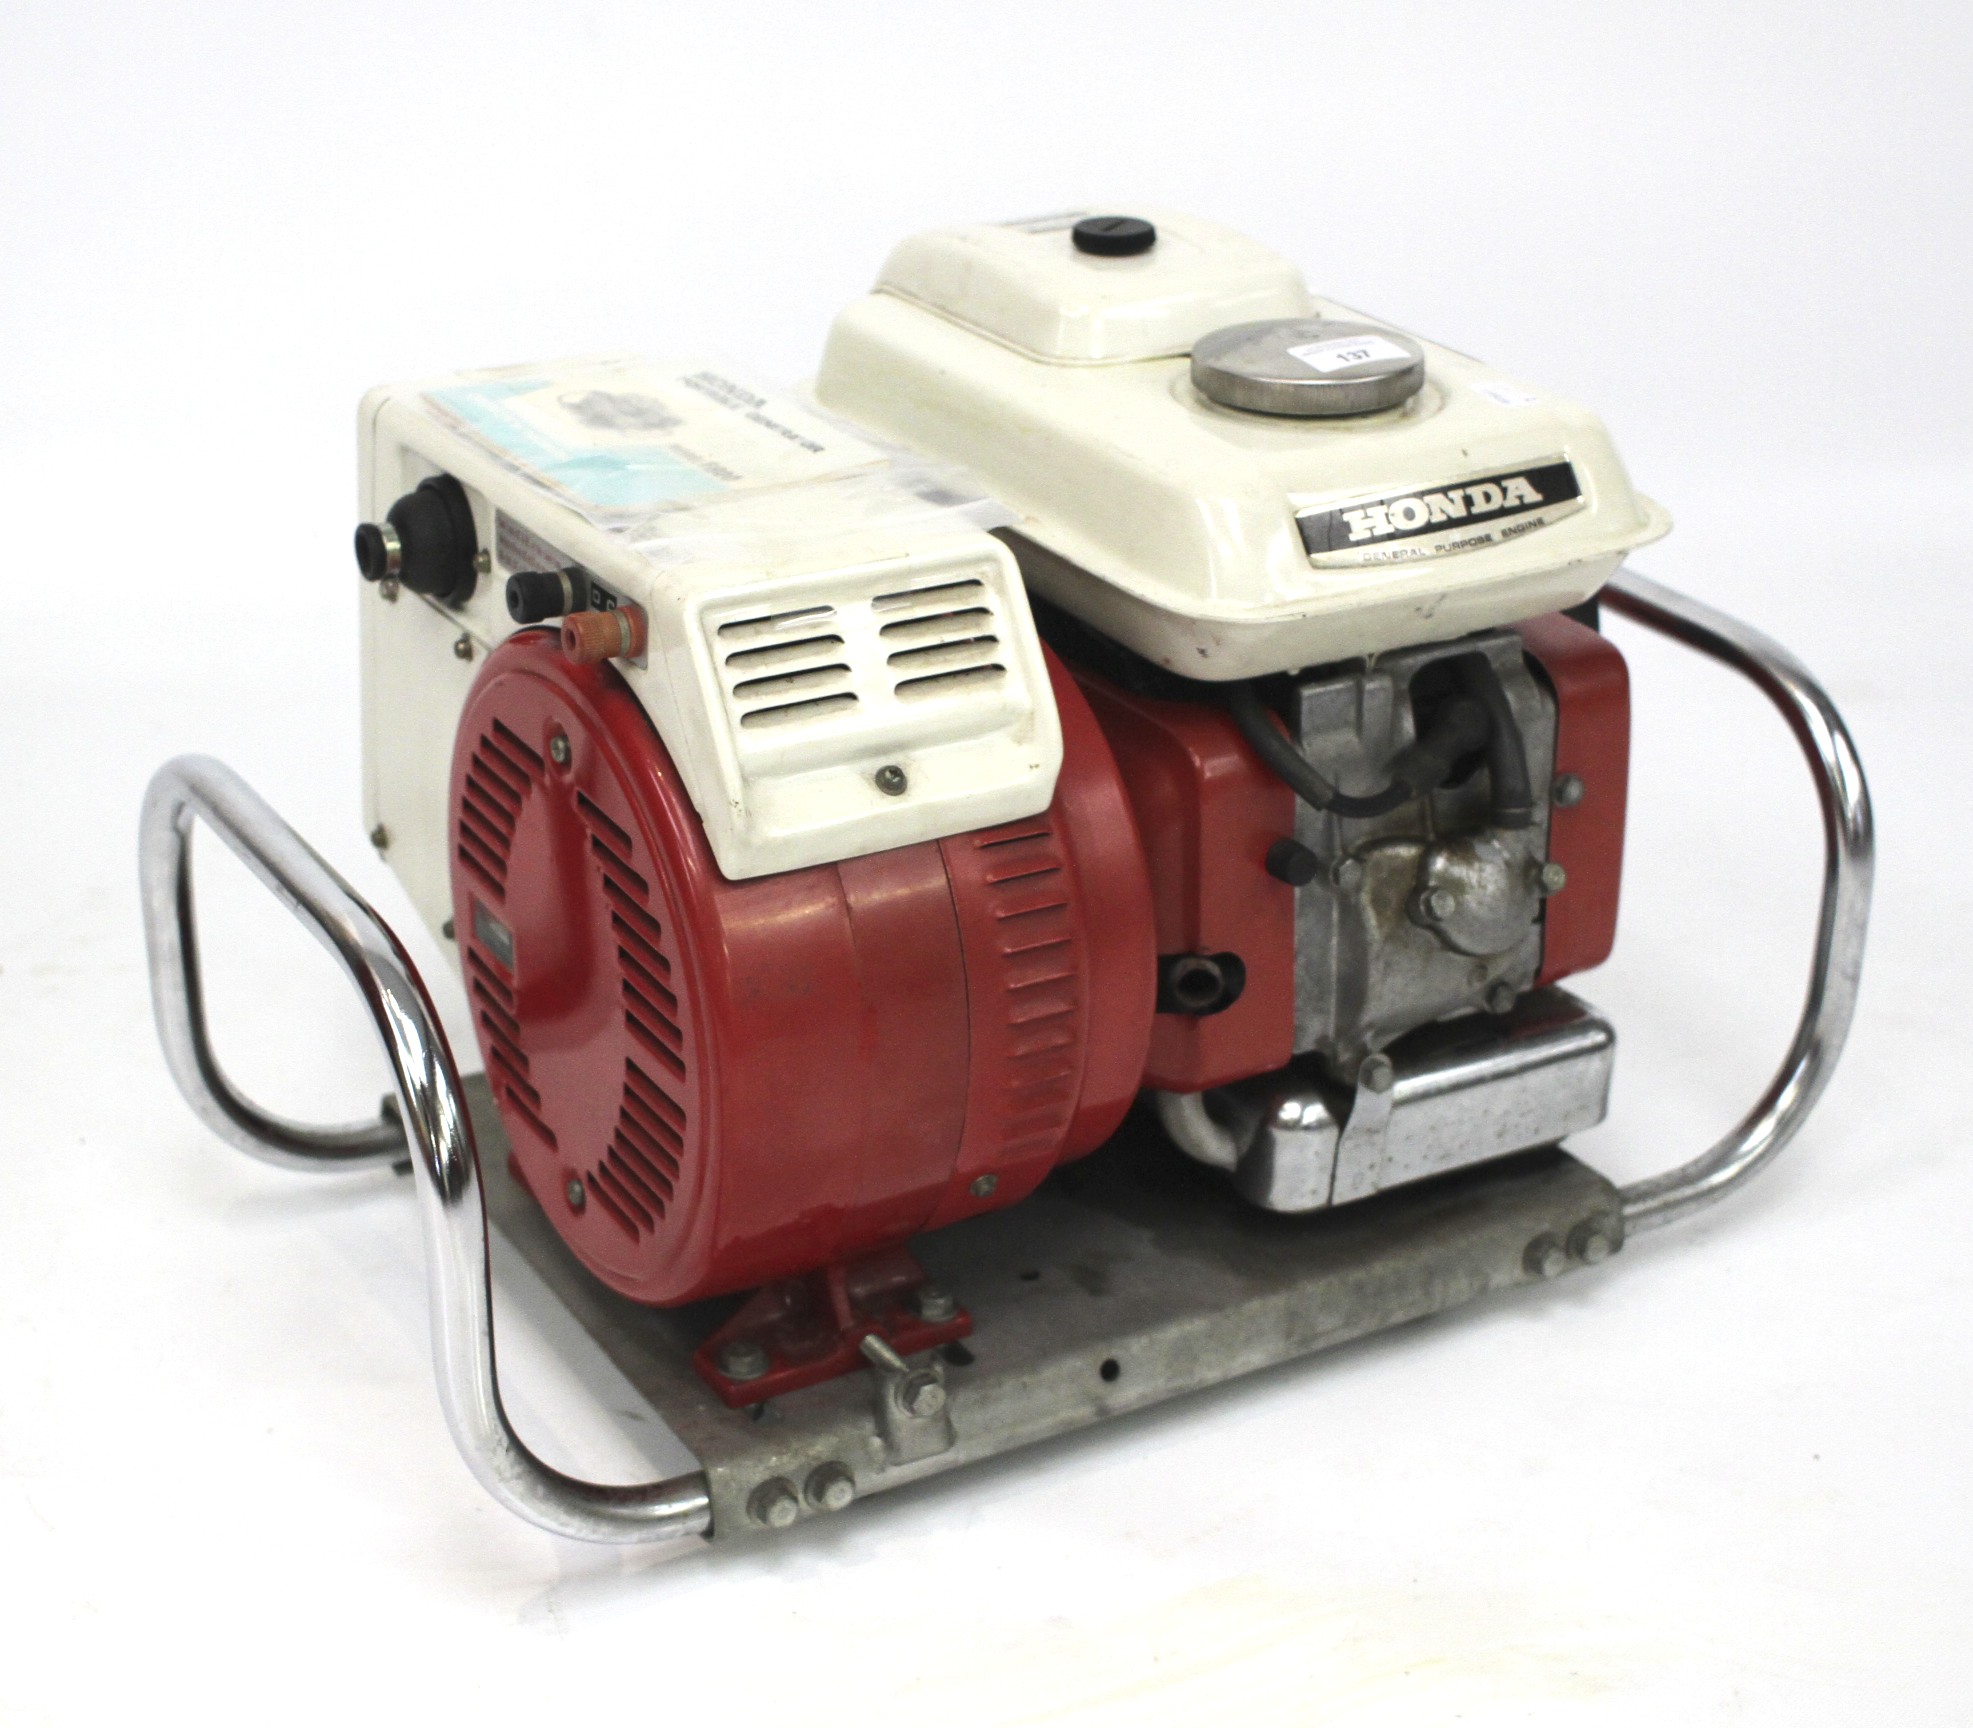 A Honda E800 petrol generator.